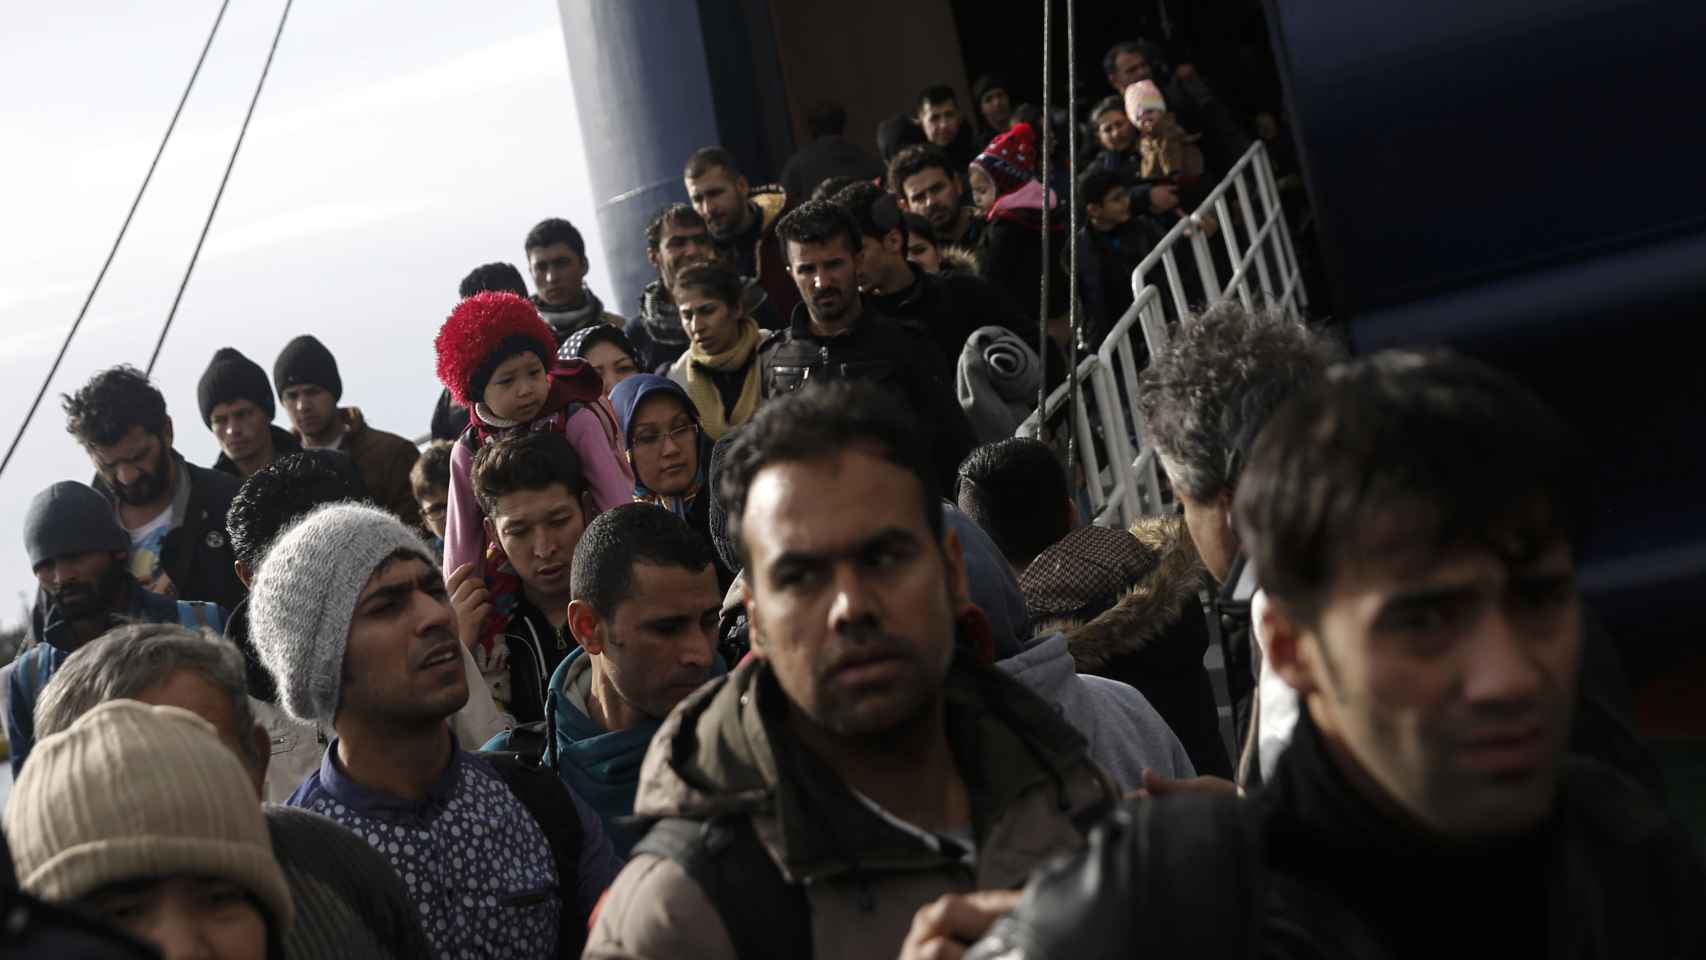 Refugiados llegan a Europa.